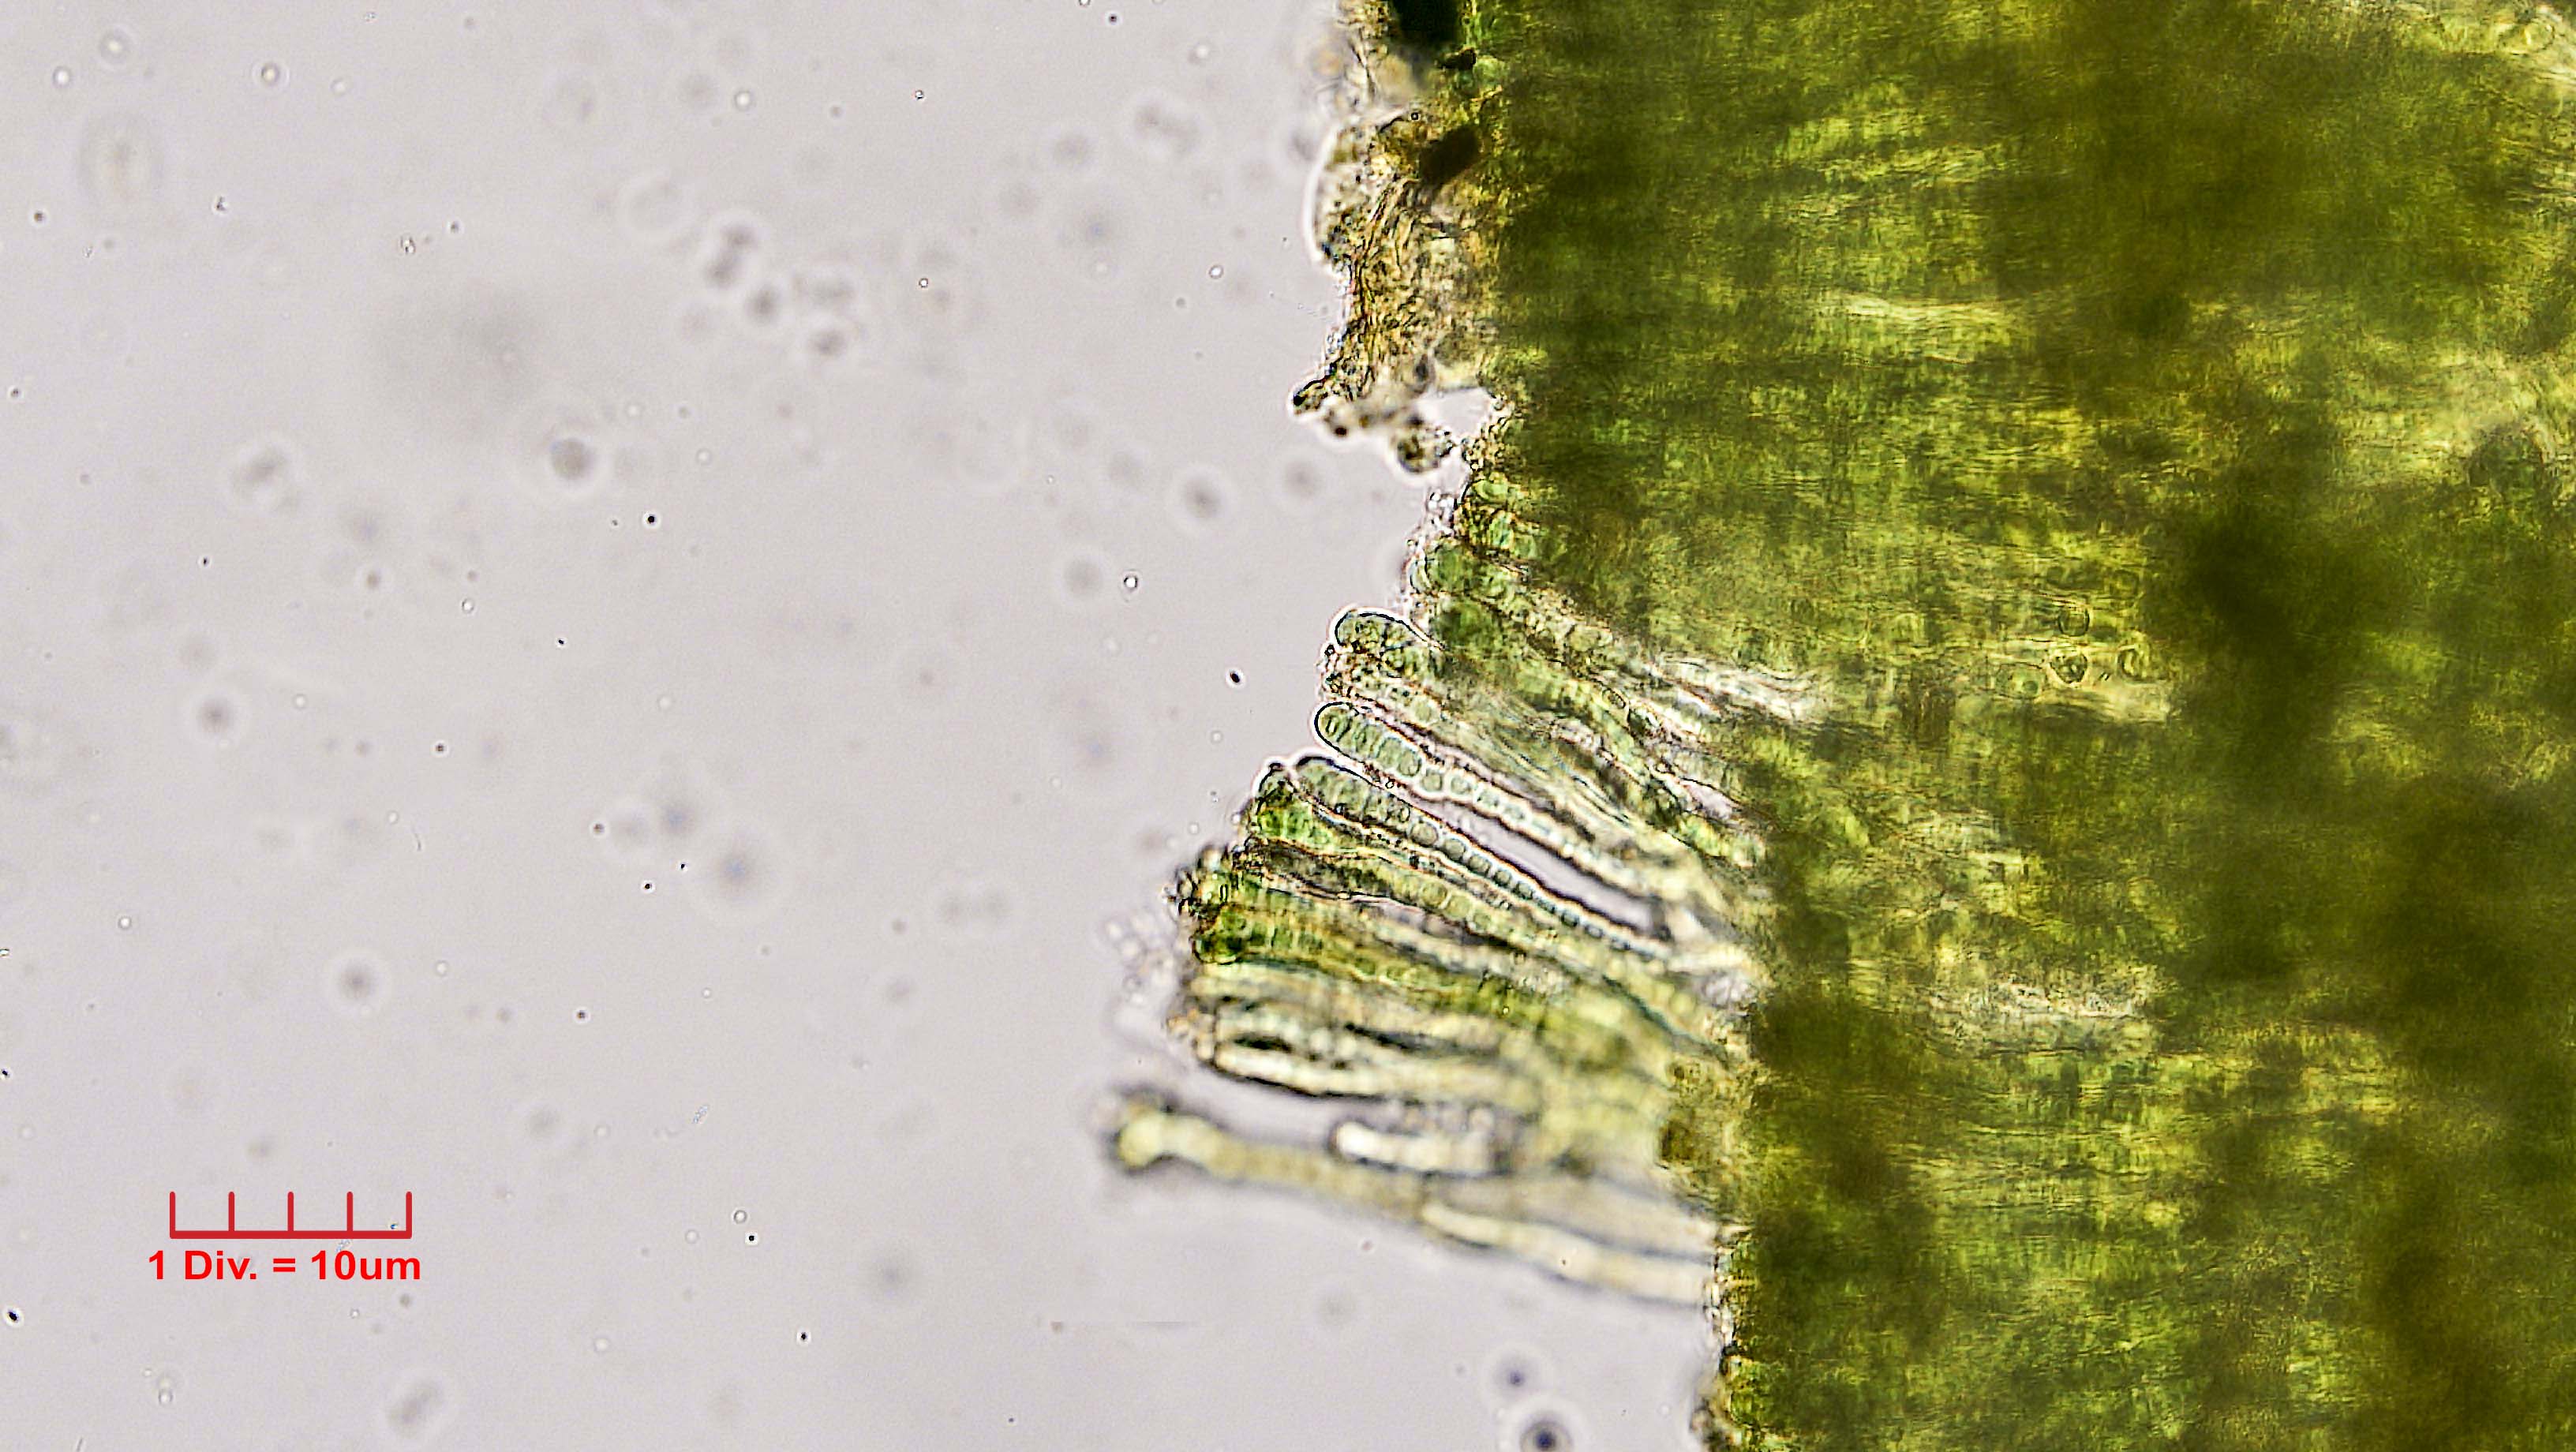 ././Cyanobacteria/Nostocales/Capsosiraceae/Capsosira/brebissonii/capsosira-brebissonii-515.jpg